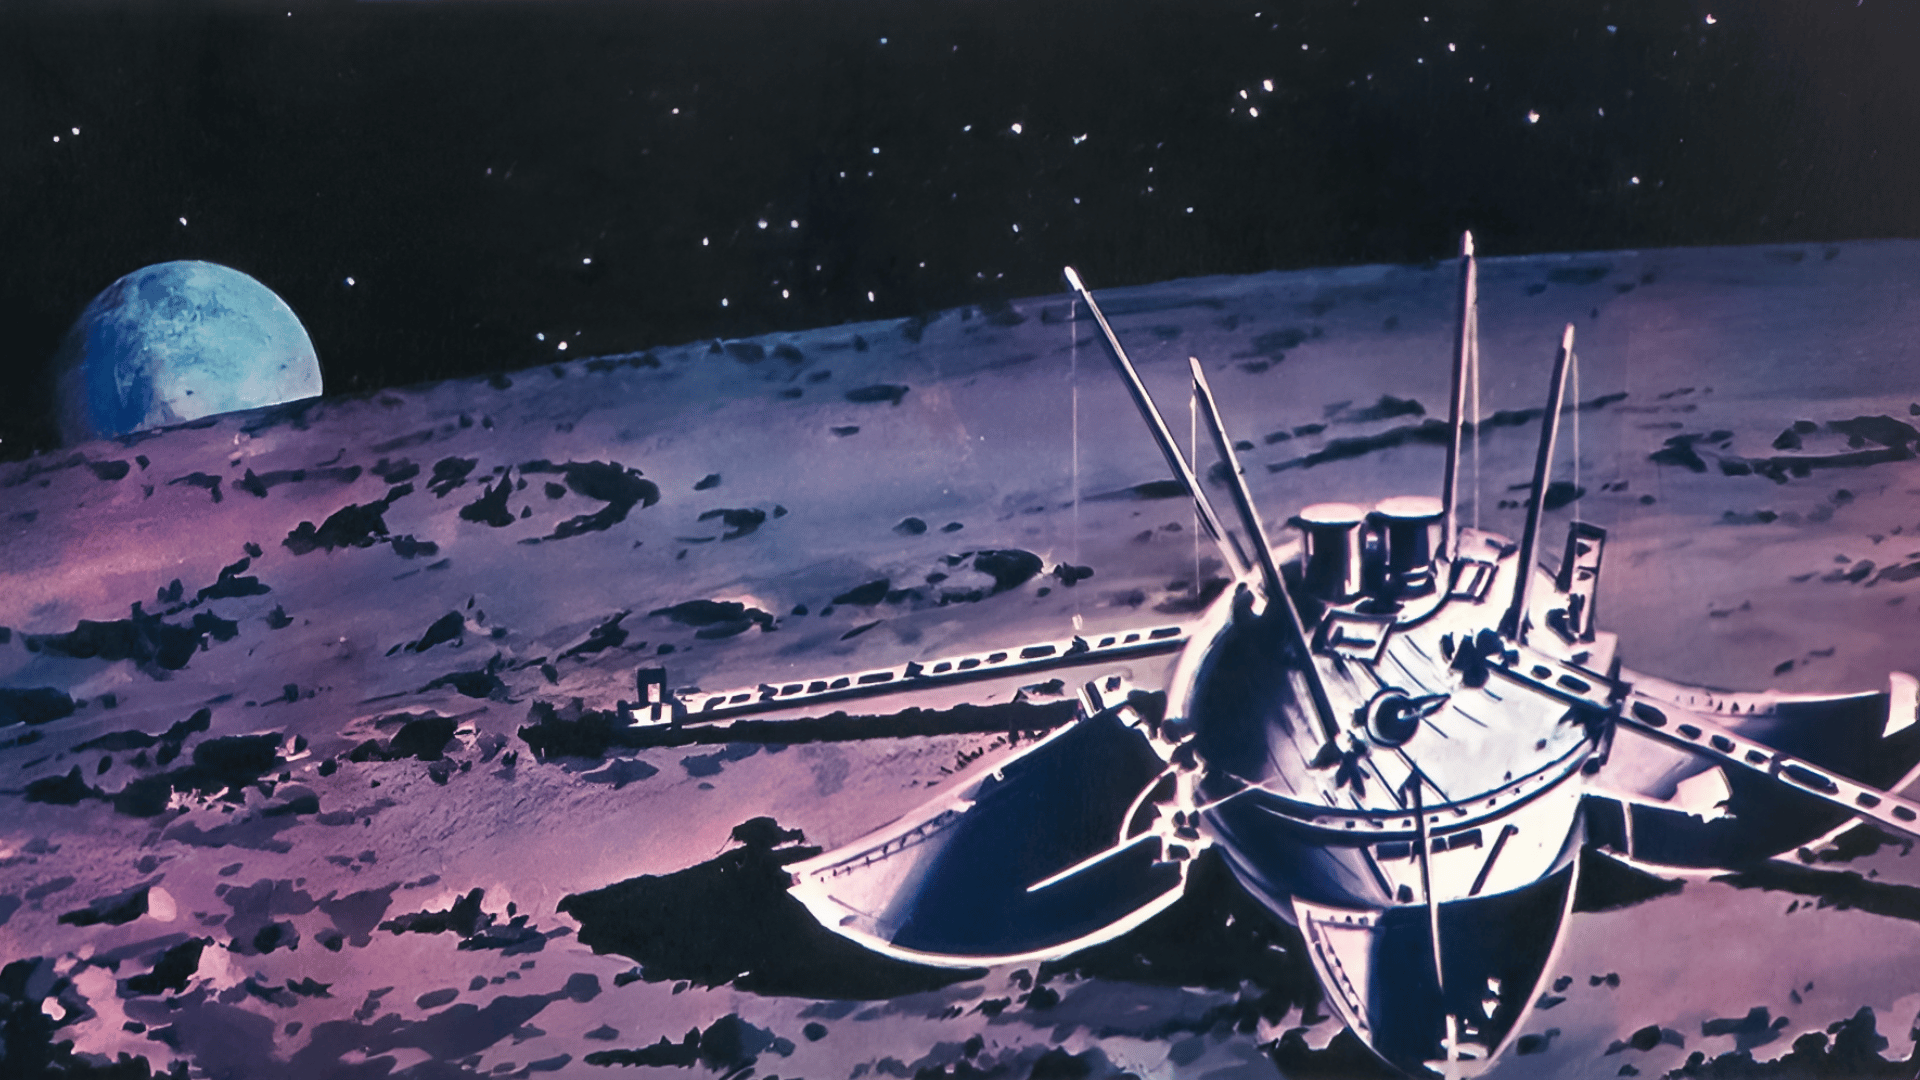 История станций луна. Луна-9 автоматическая межпланетная станция. Советская АМС «Луна - 9». 1966 — СССР осуществил успешный запуск межпланетной станции «Луна-13».. Станция Луна-9 1966 года.